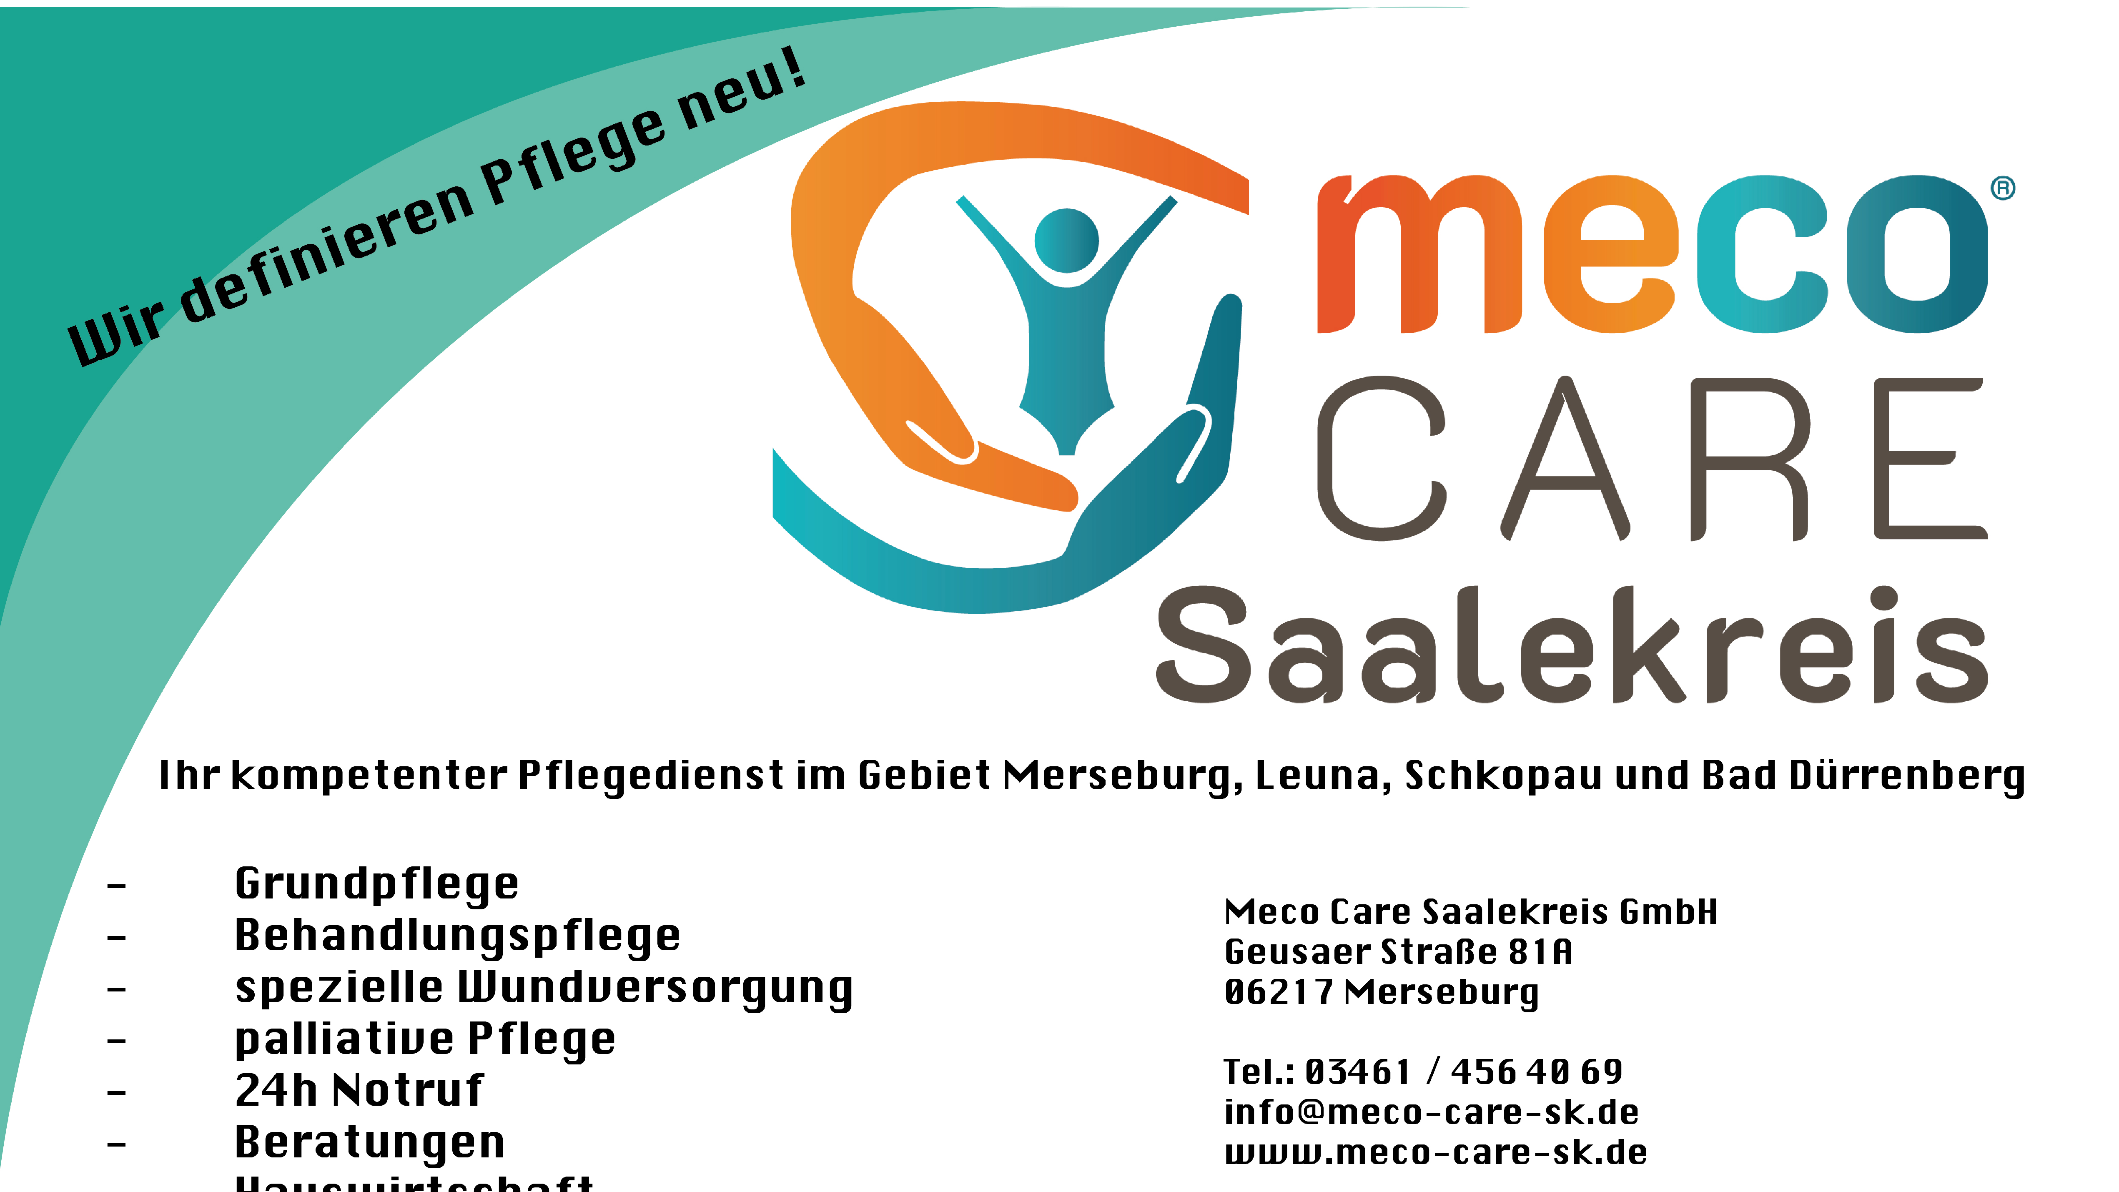 Bild der meco care Saalekreis GmbH